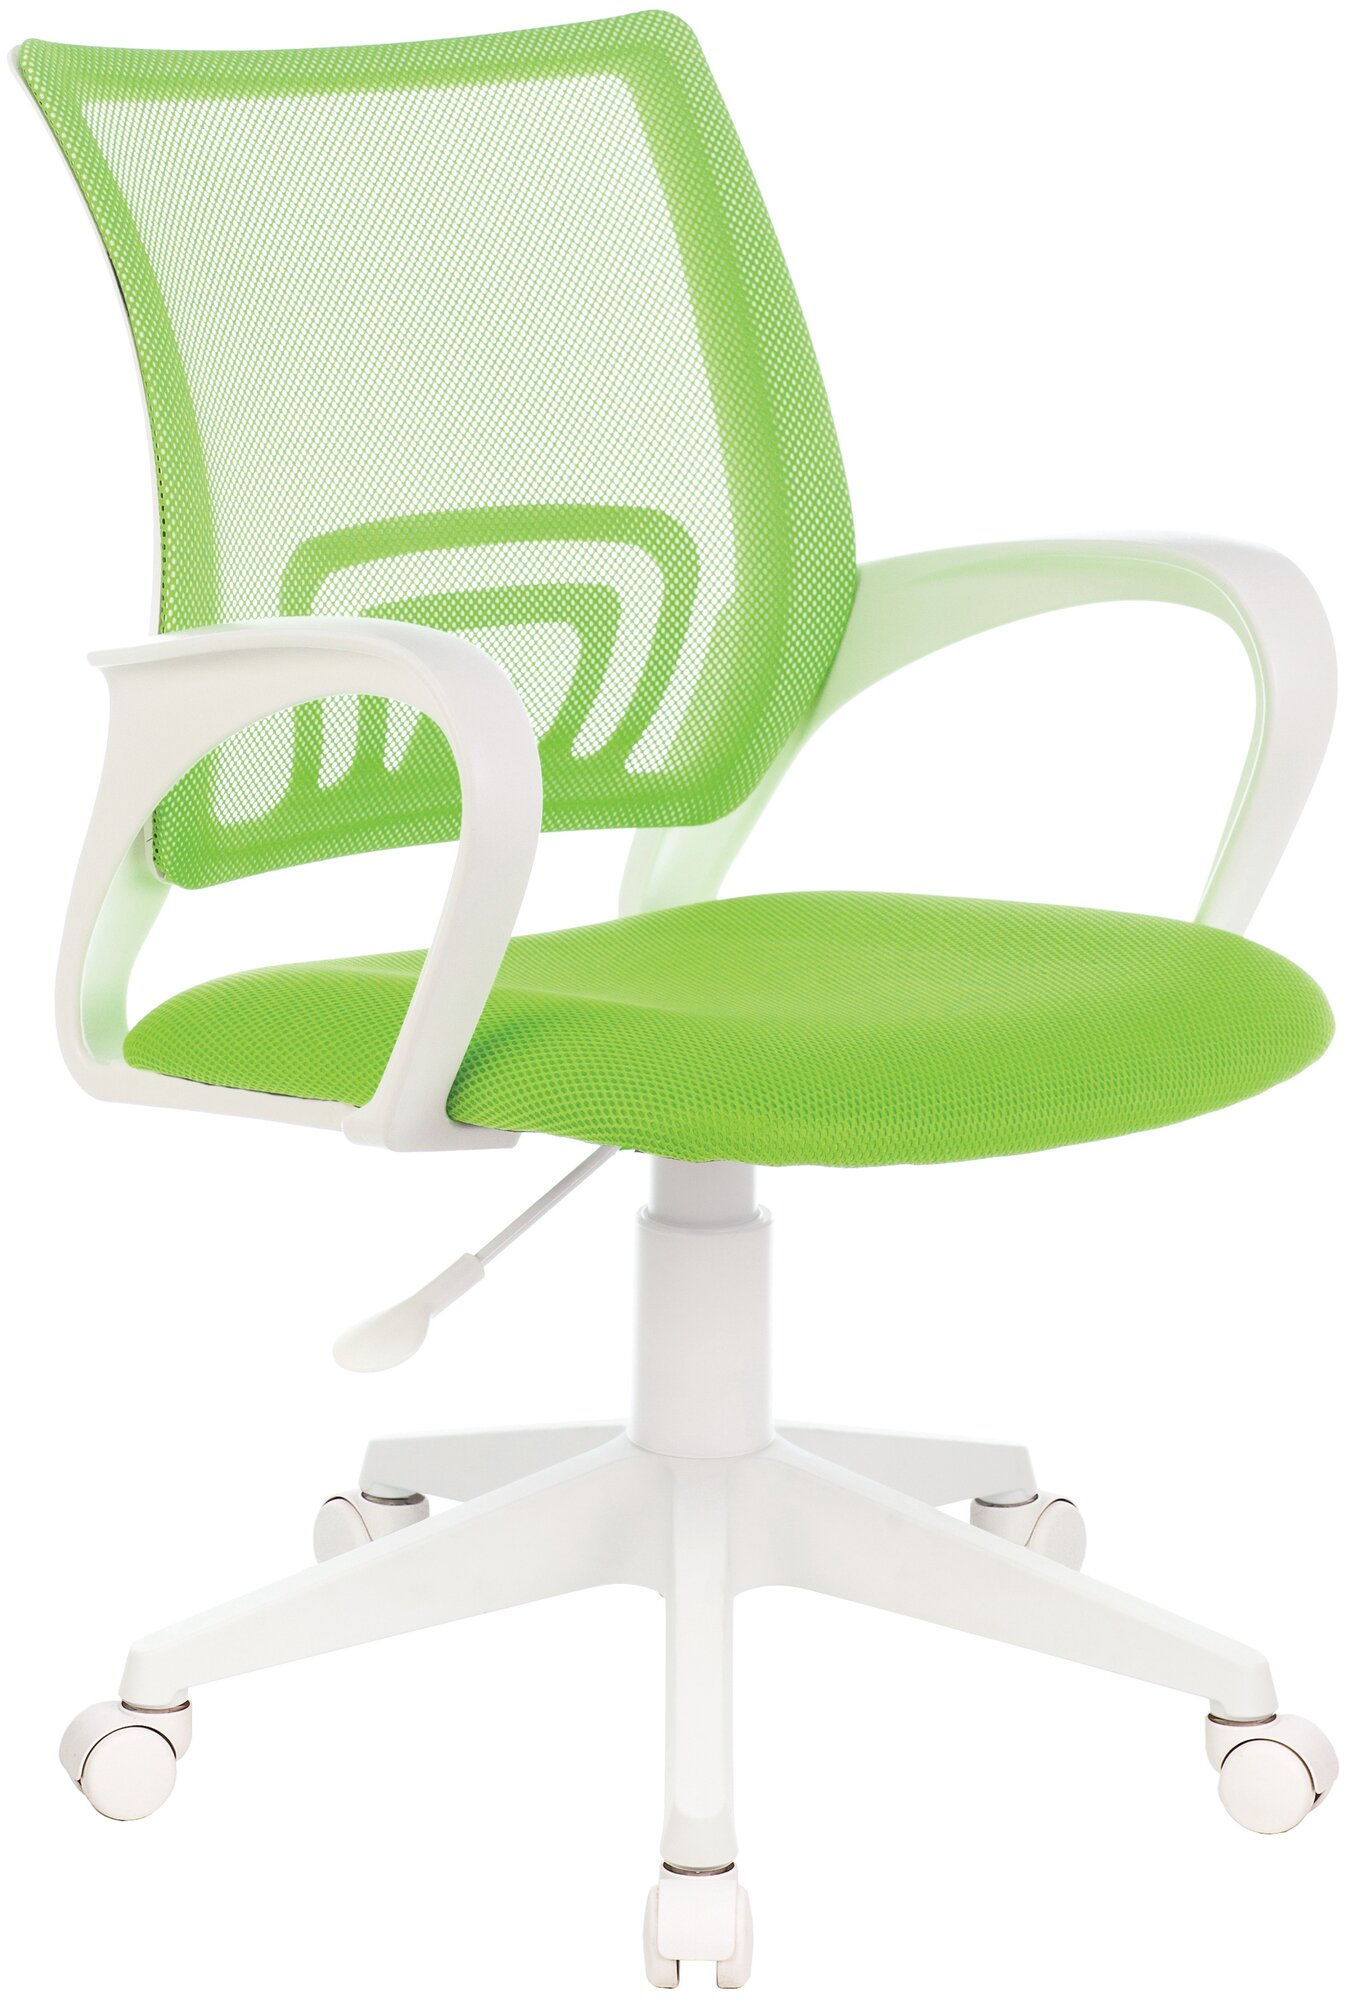 Компьютерное кресло Бюрократ CH-W695NLT офисное, обивка: сетка/текстиль, цвет: салатовый